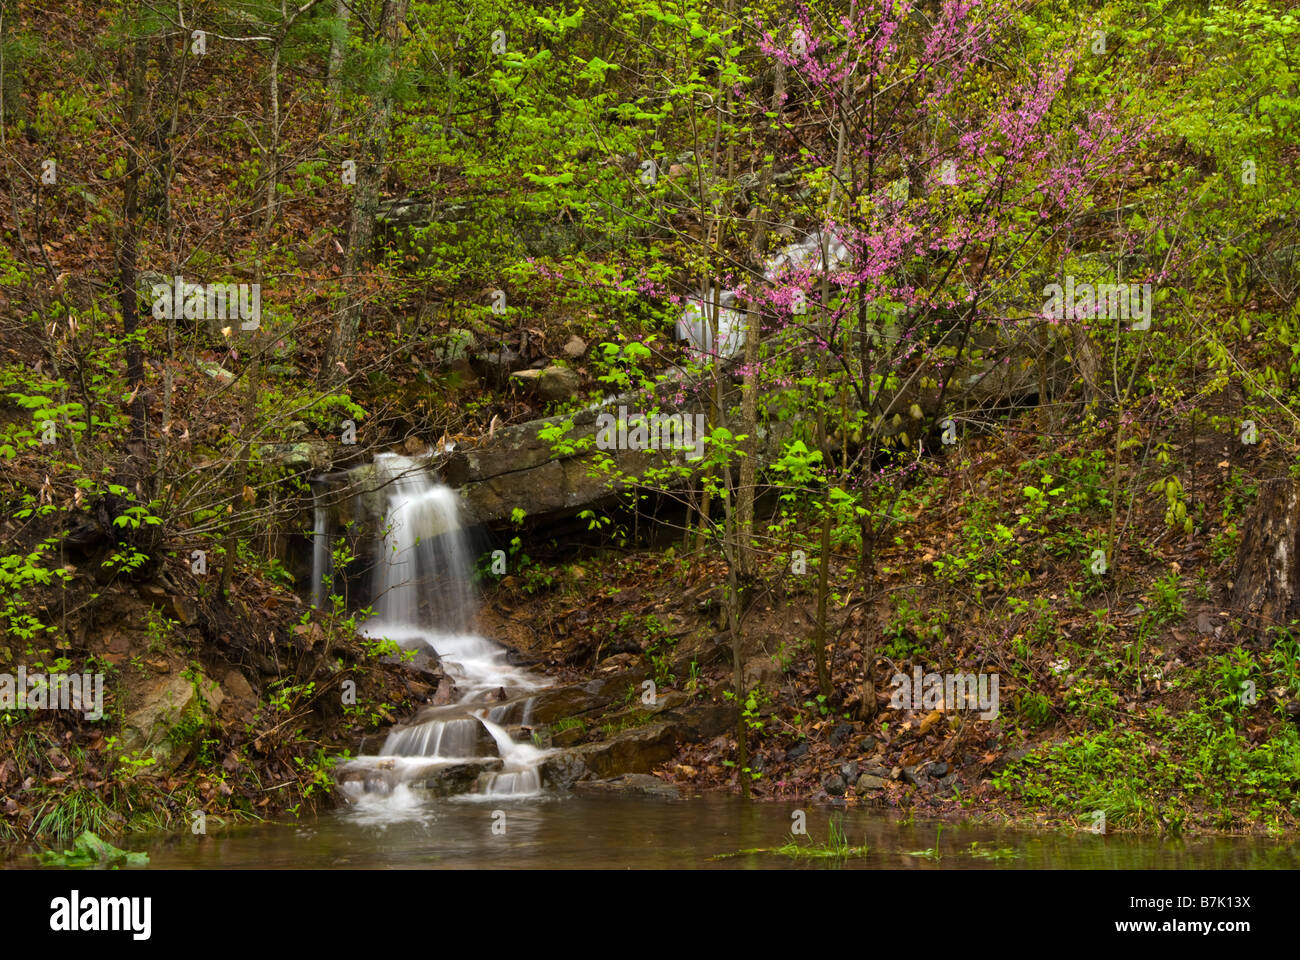 Une cascade cascades en bas d'une colline dans un pool de Vernal le Shenandoah Valley en avril. Un redbud tree fleurit à proximité. Banque D'Images